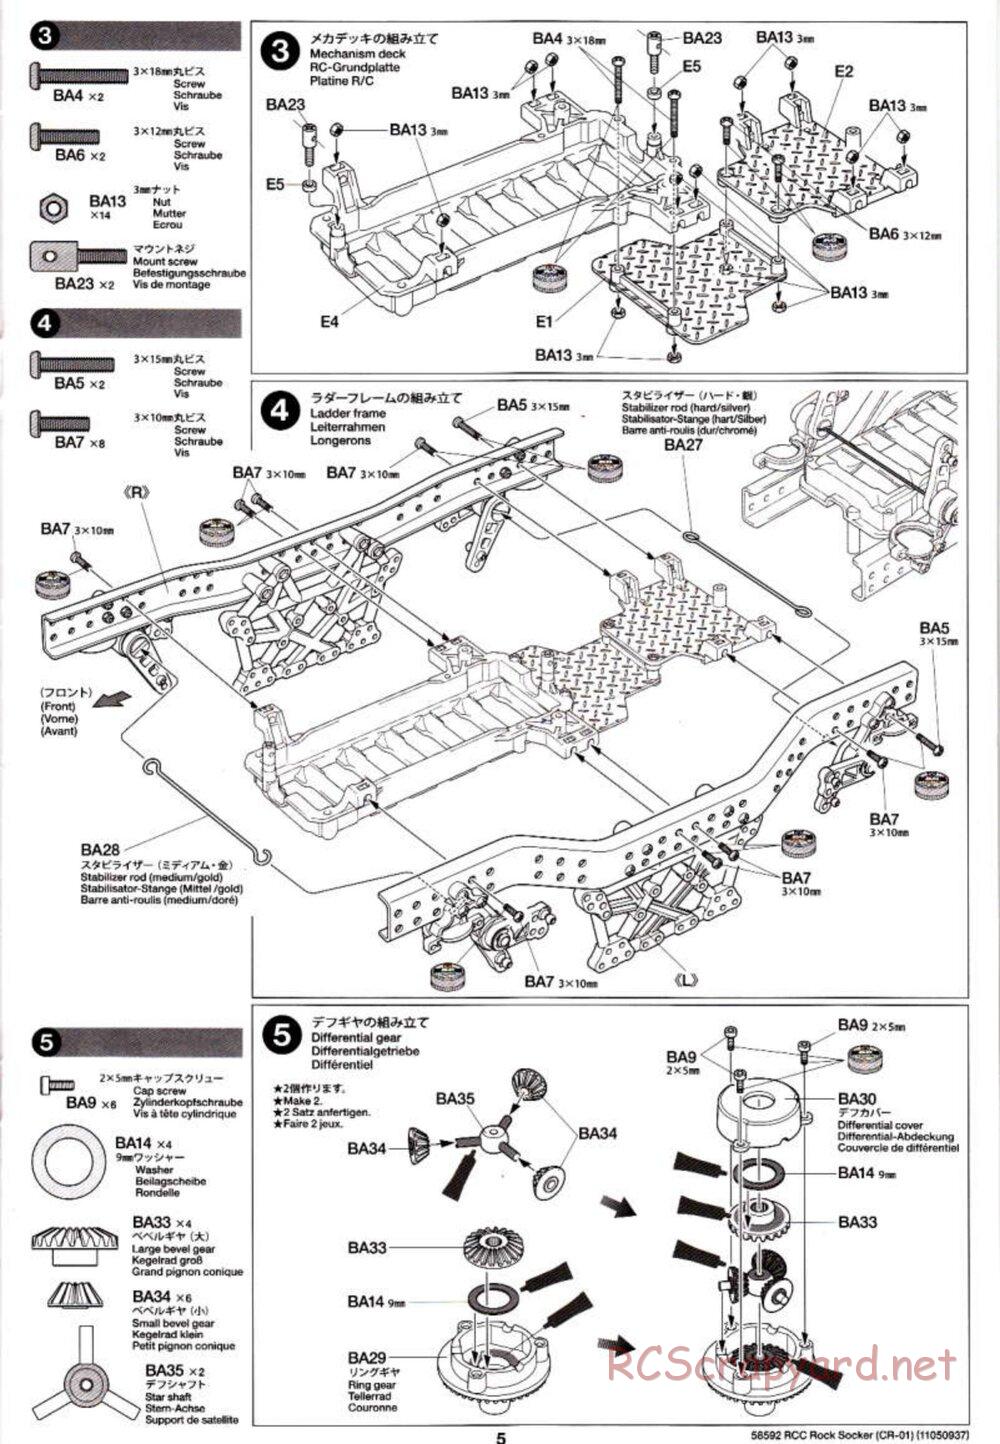 Tamiya - Rock Socker - CR-01 Chassis - Manual - Page 5